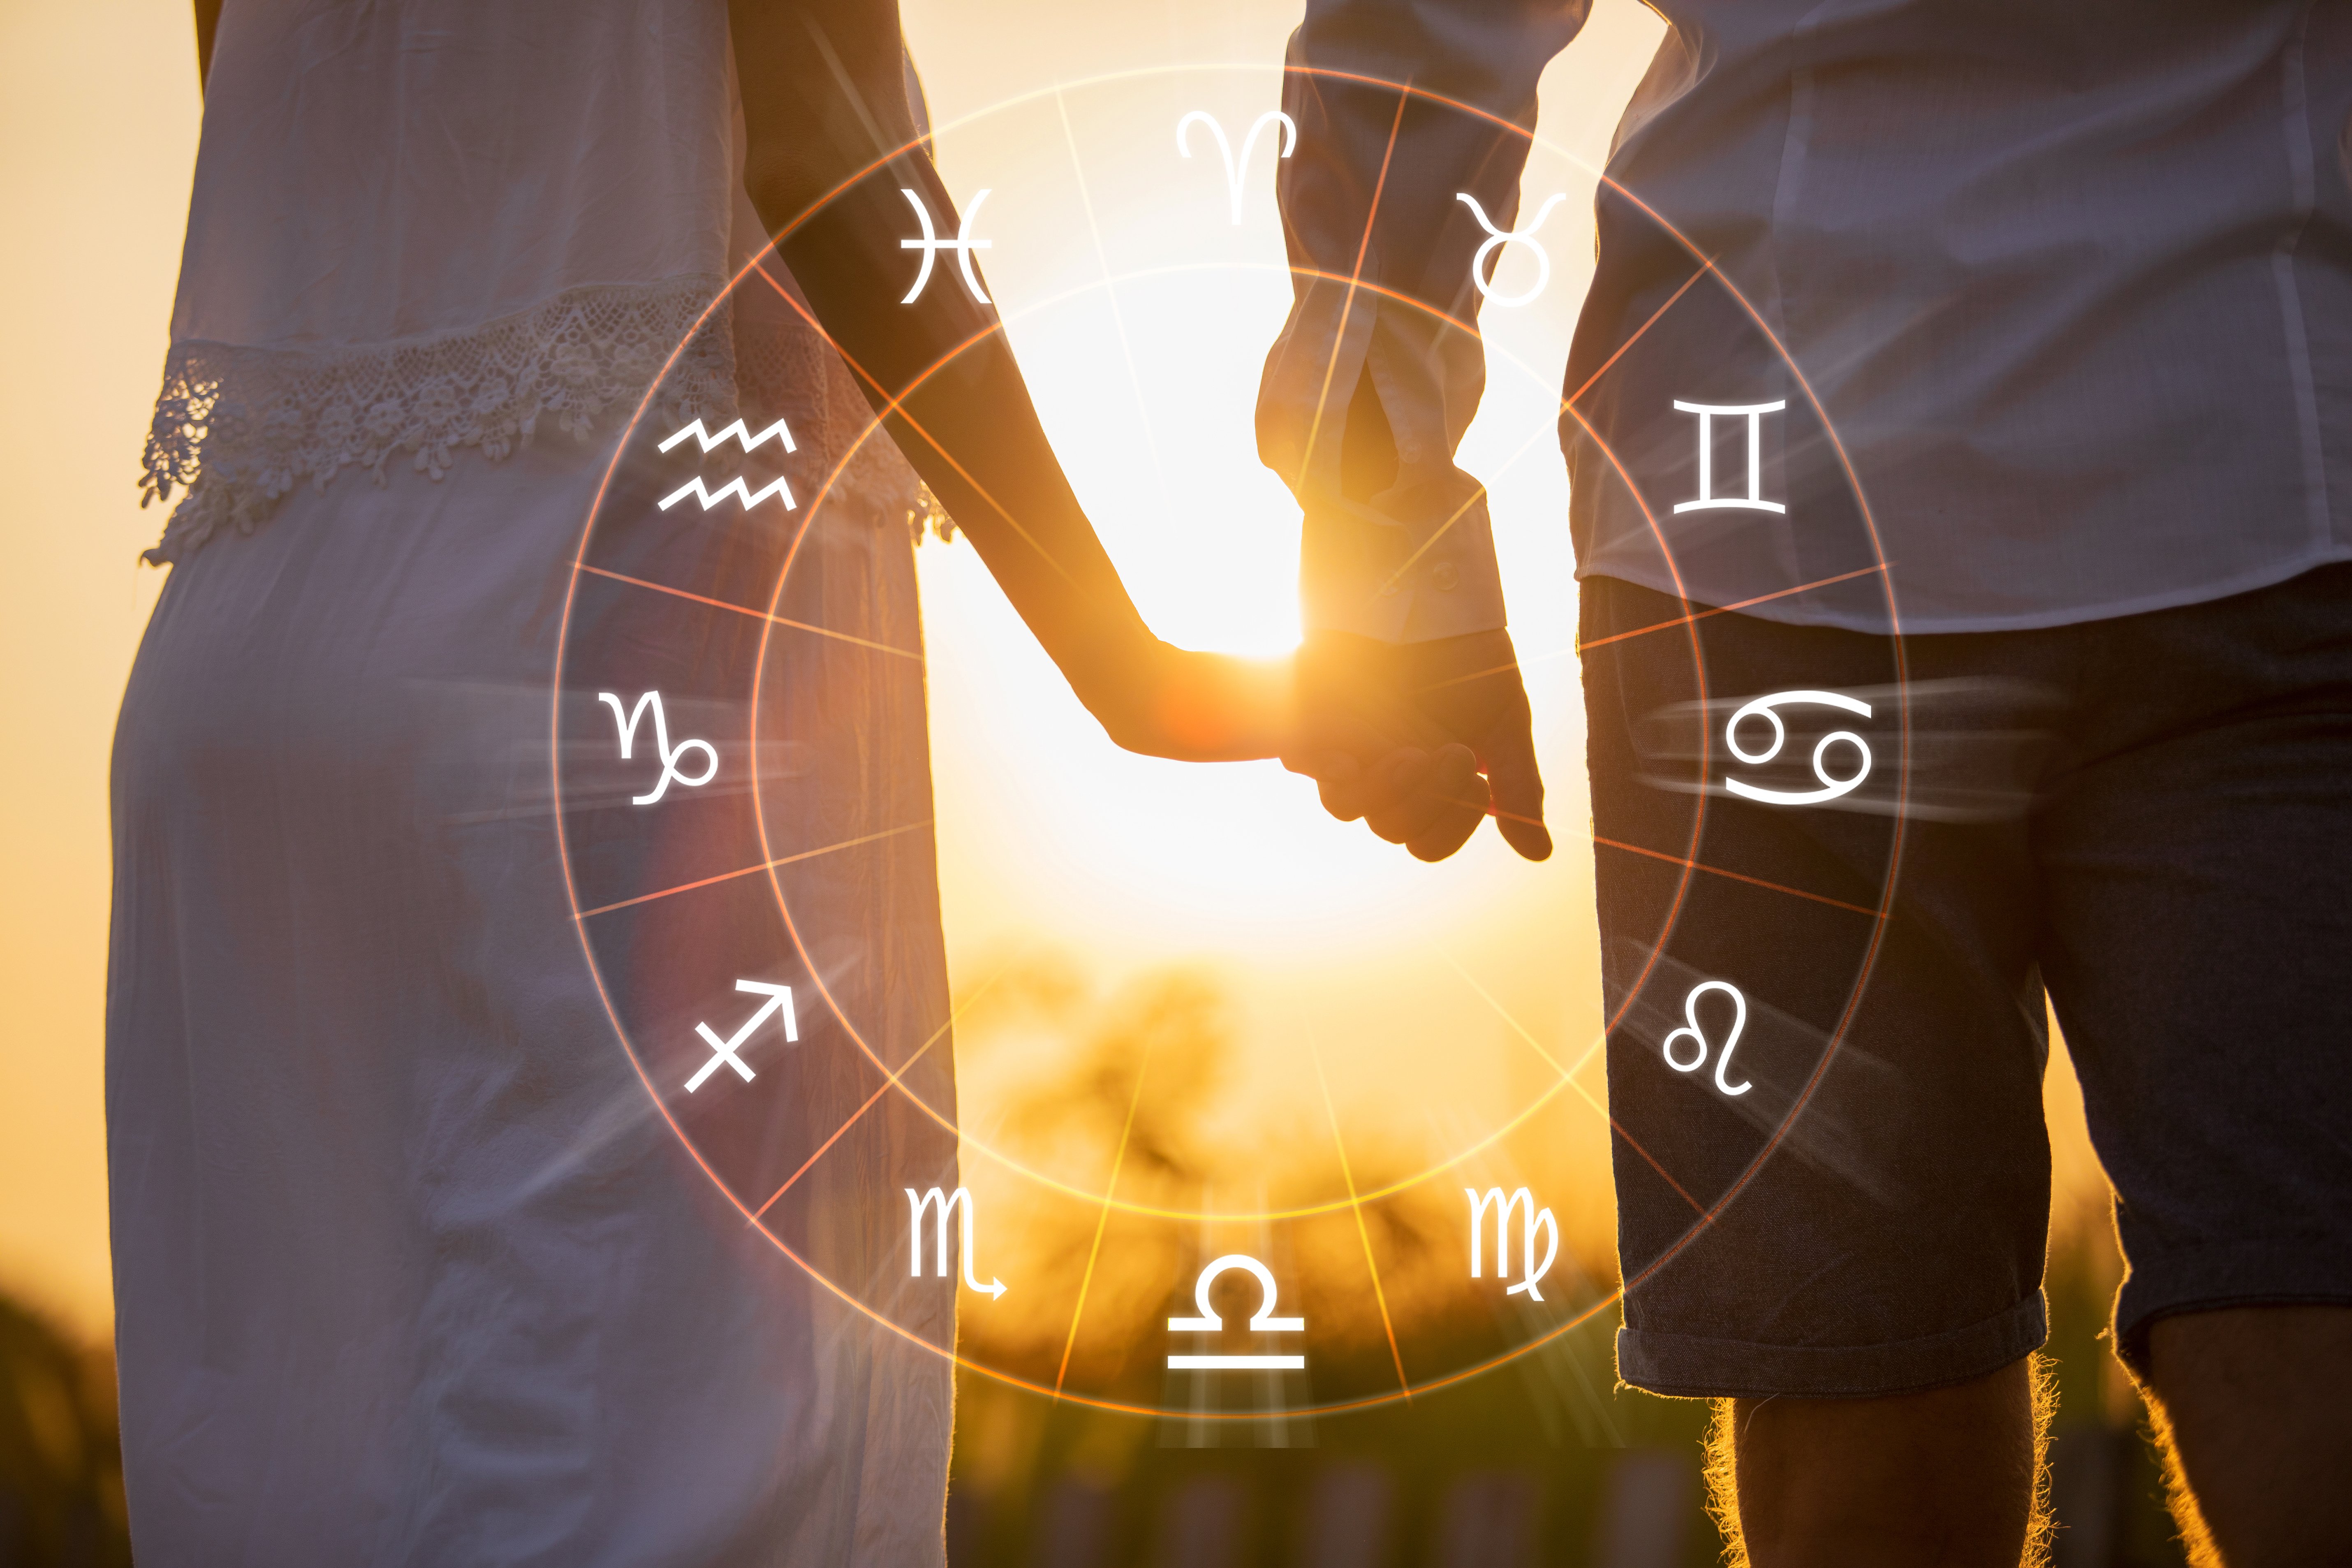 Vocês combinam como casal? Marque o seu signo solar com o da pessoa amada e veja o potencial do seu relacionamento e possíveis desafios